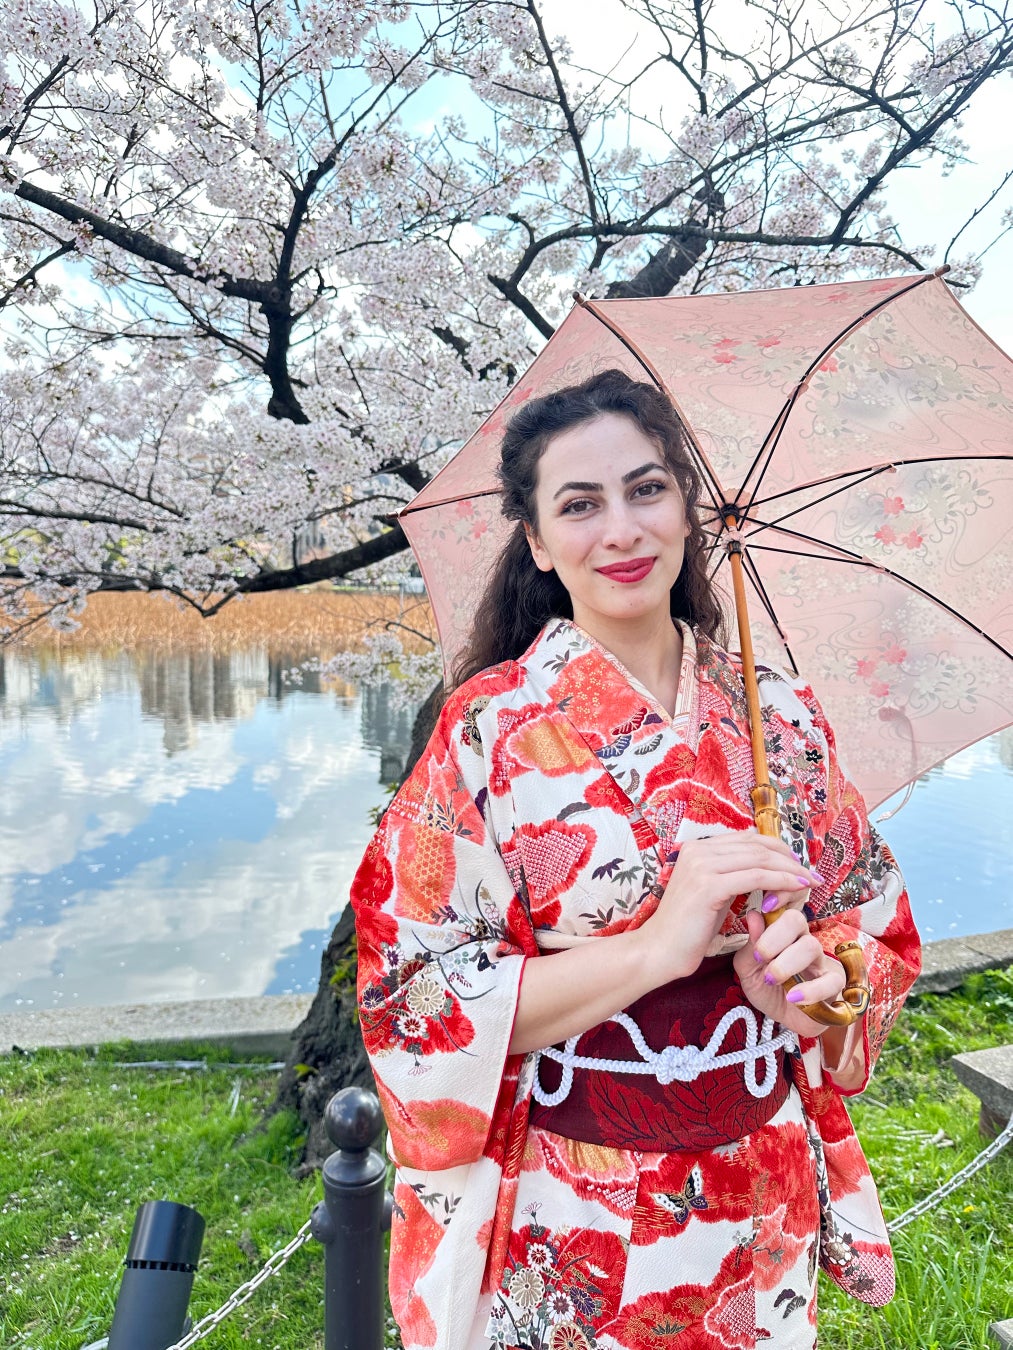 日本に来て着物と着物傘を楽しむ旅行客